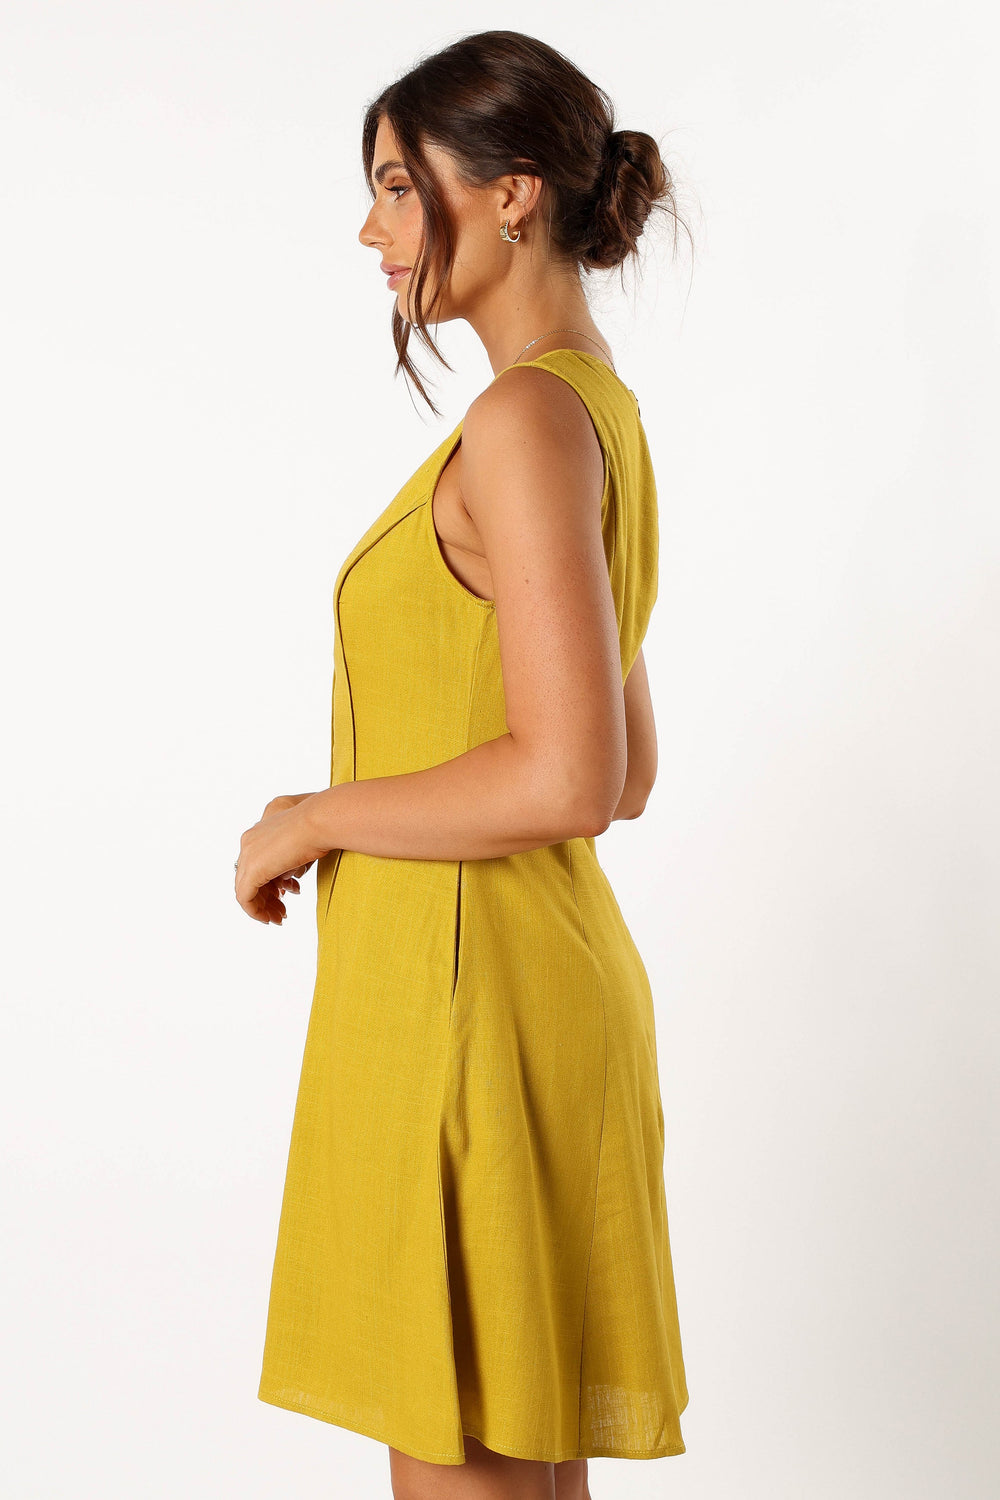 DRESSES @Rubes Mini Dress - Mustard